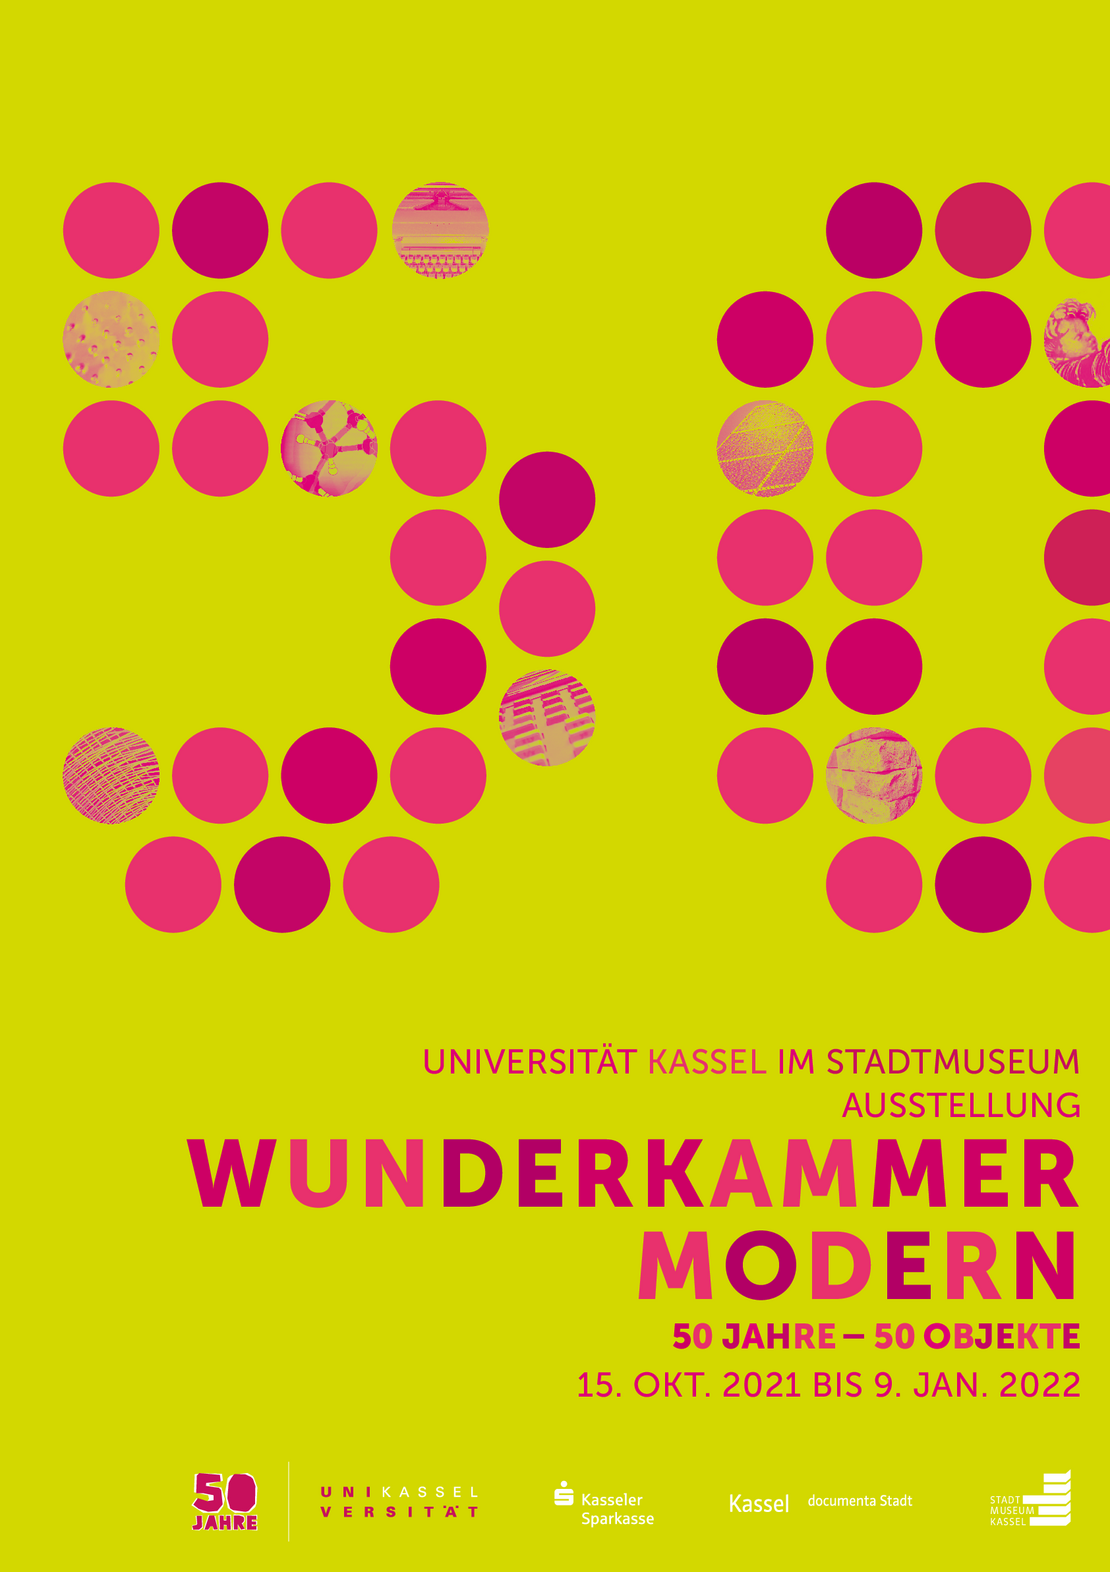 Plakat zur Ausstellung:  Universität Kassel im Stadtmuseum Ausstellung WUNDERKAMMER MODERN 50 JAHRE – 50 OBJEKTE 15. OKT. 2021 bis 9. JAN. 2022